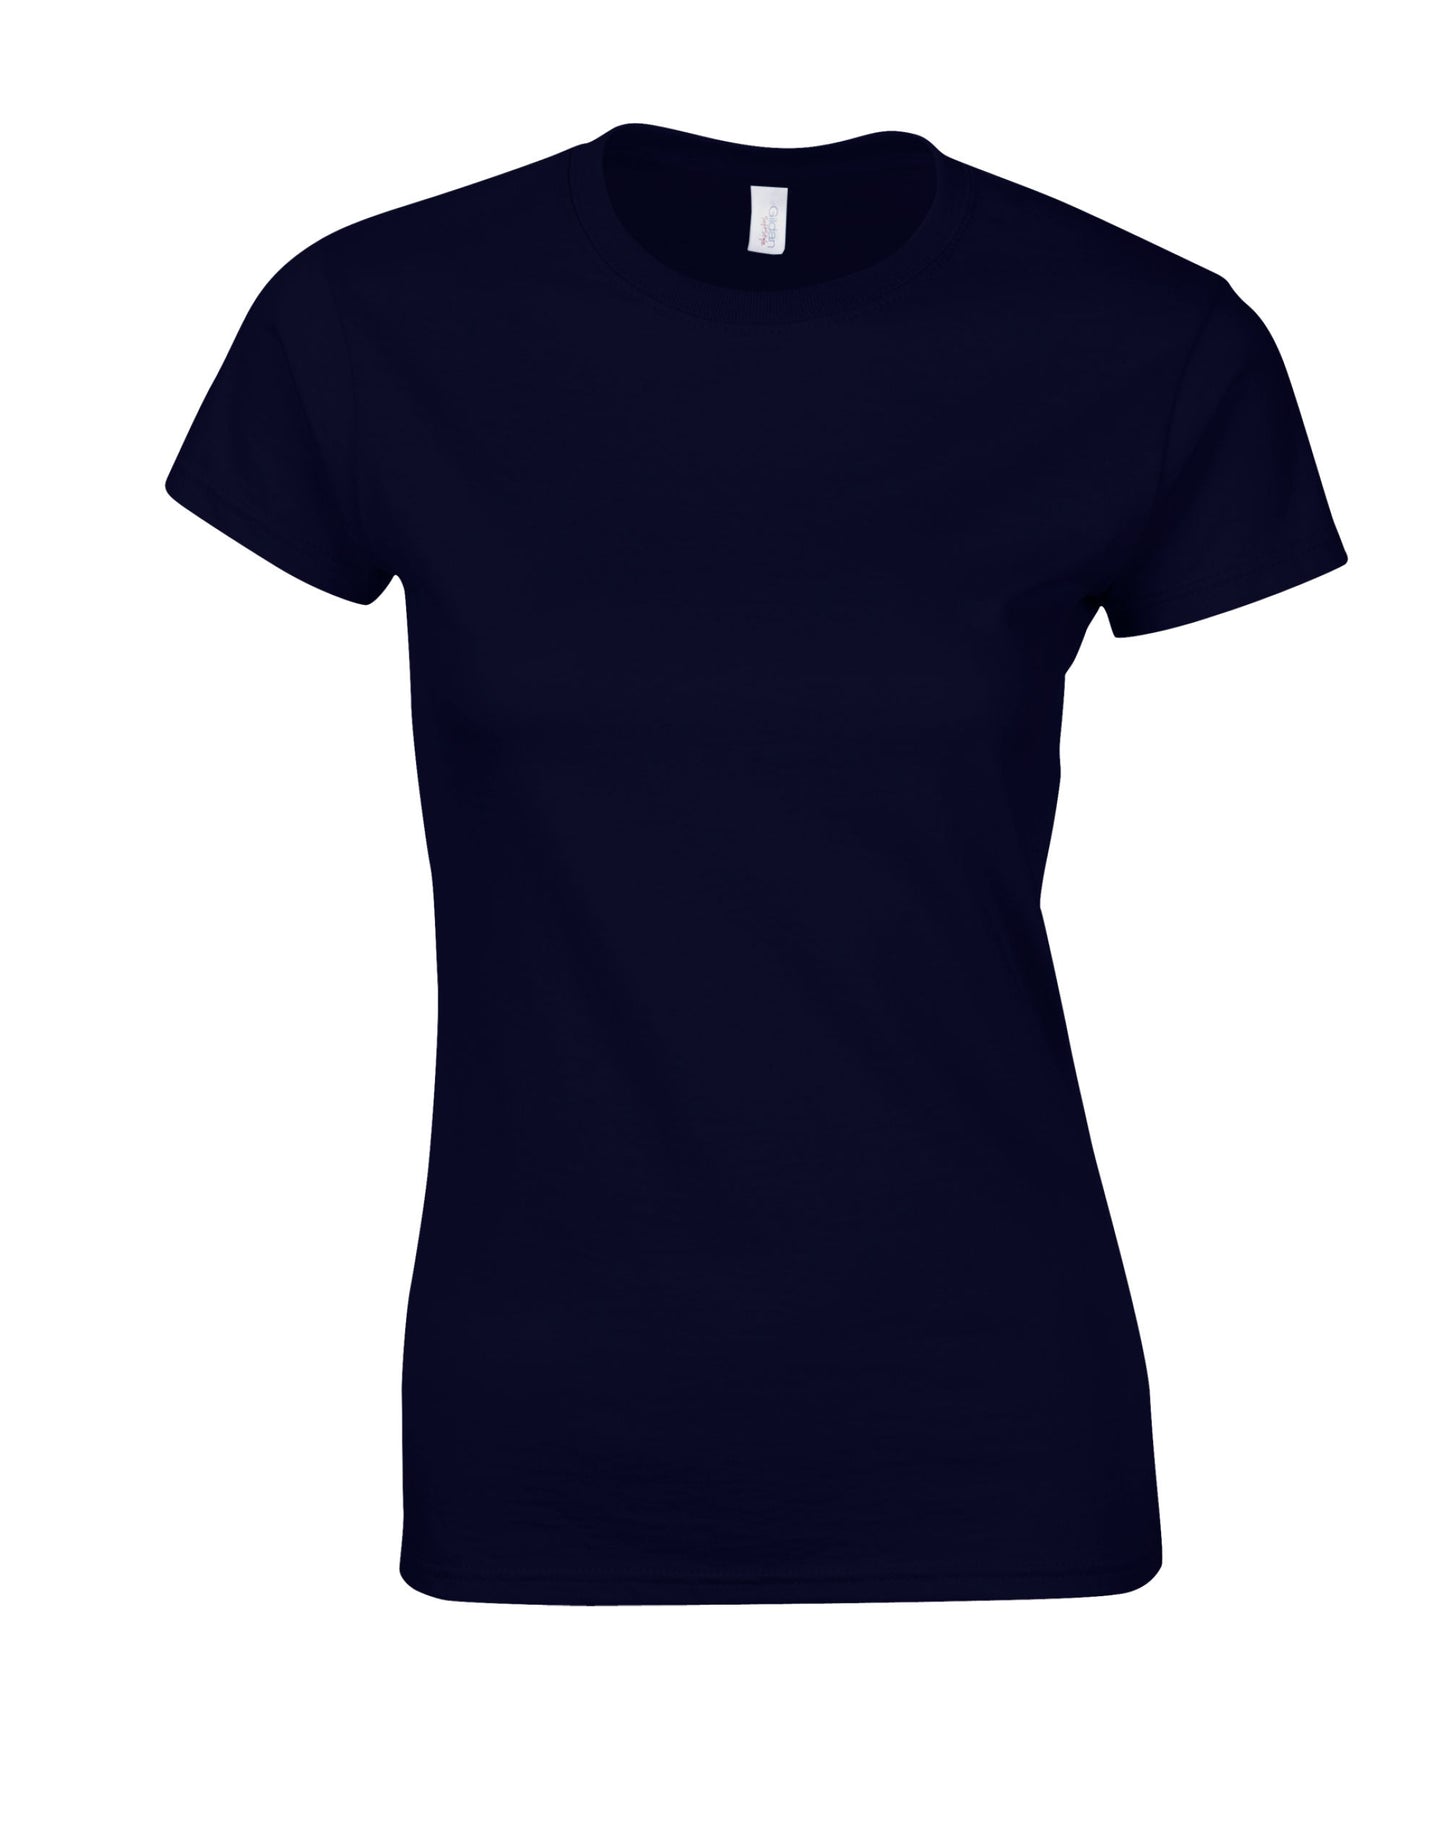 Gildan Softstyle Midweight Women's T-Shirt